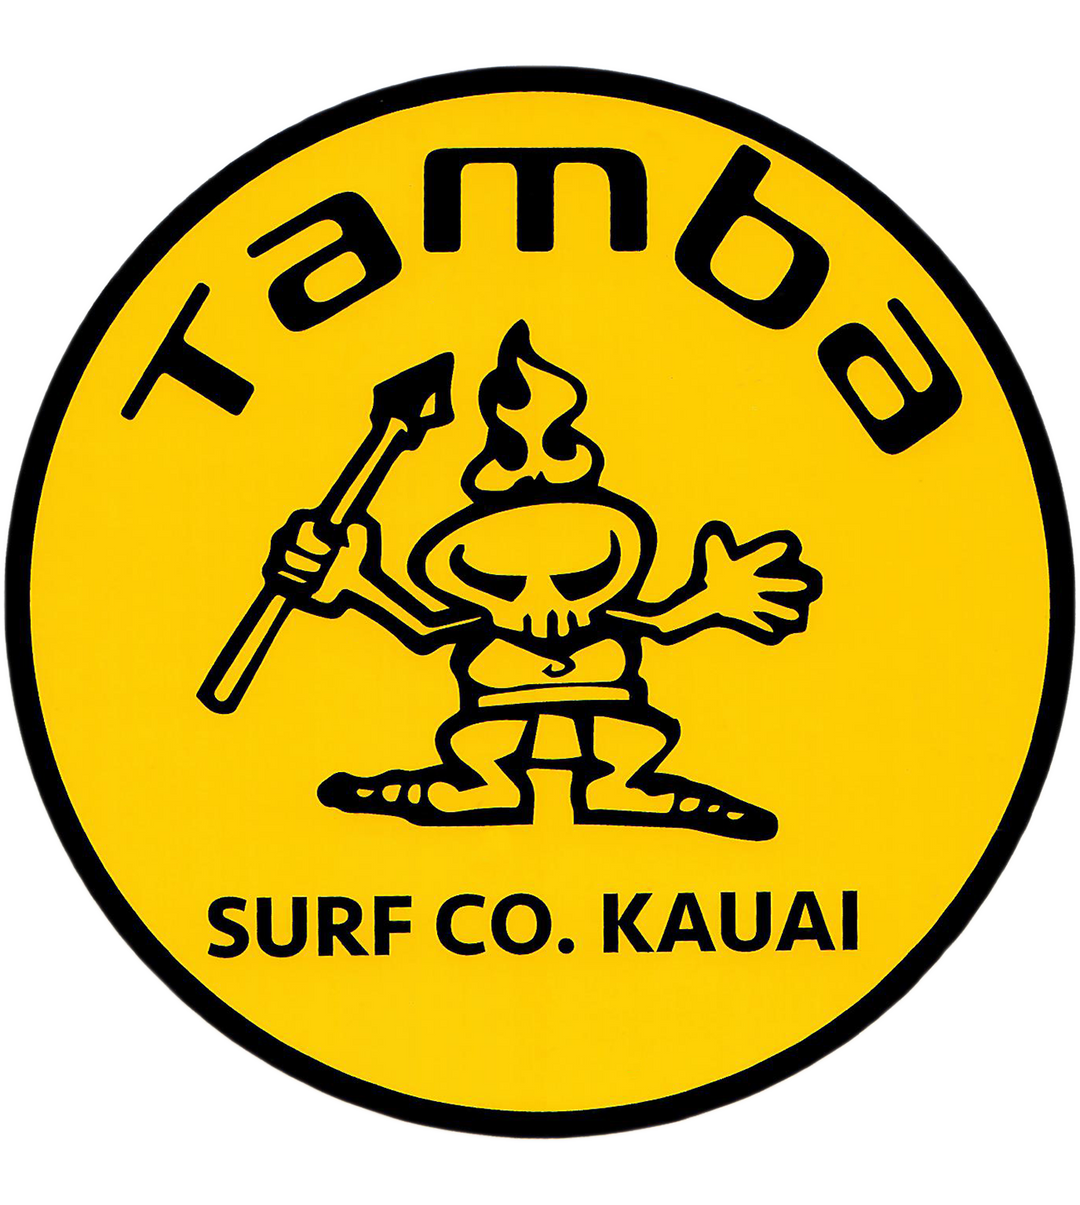 Tamba Stamp Sticker 5 x 5